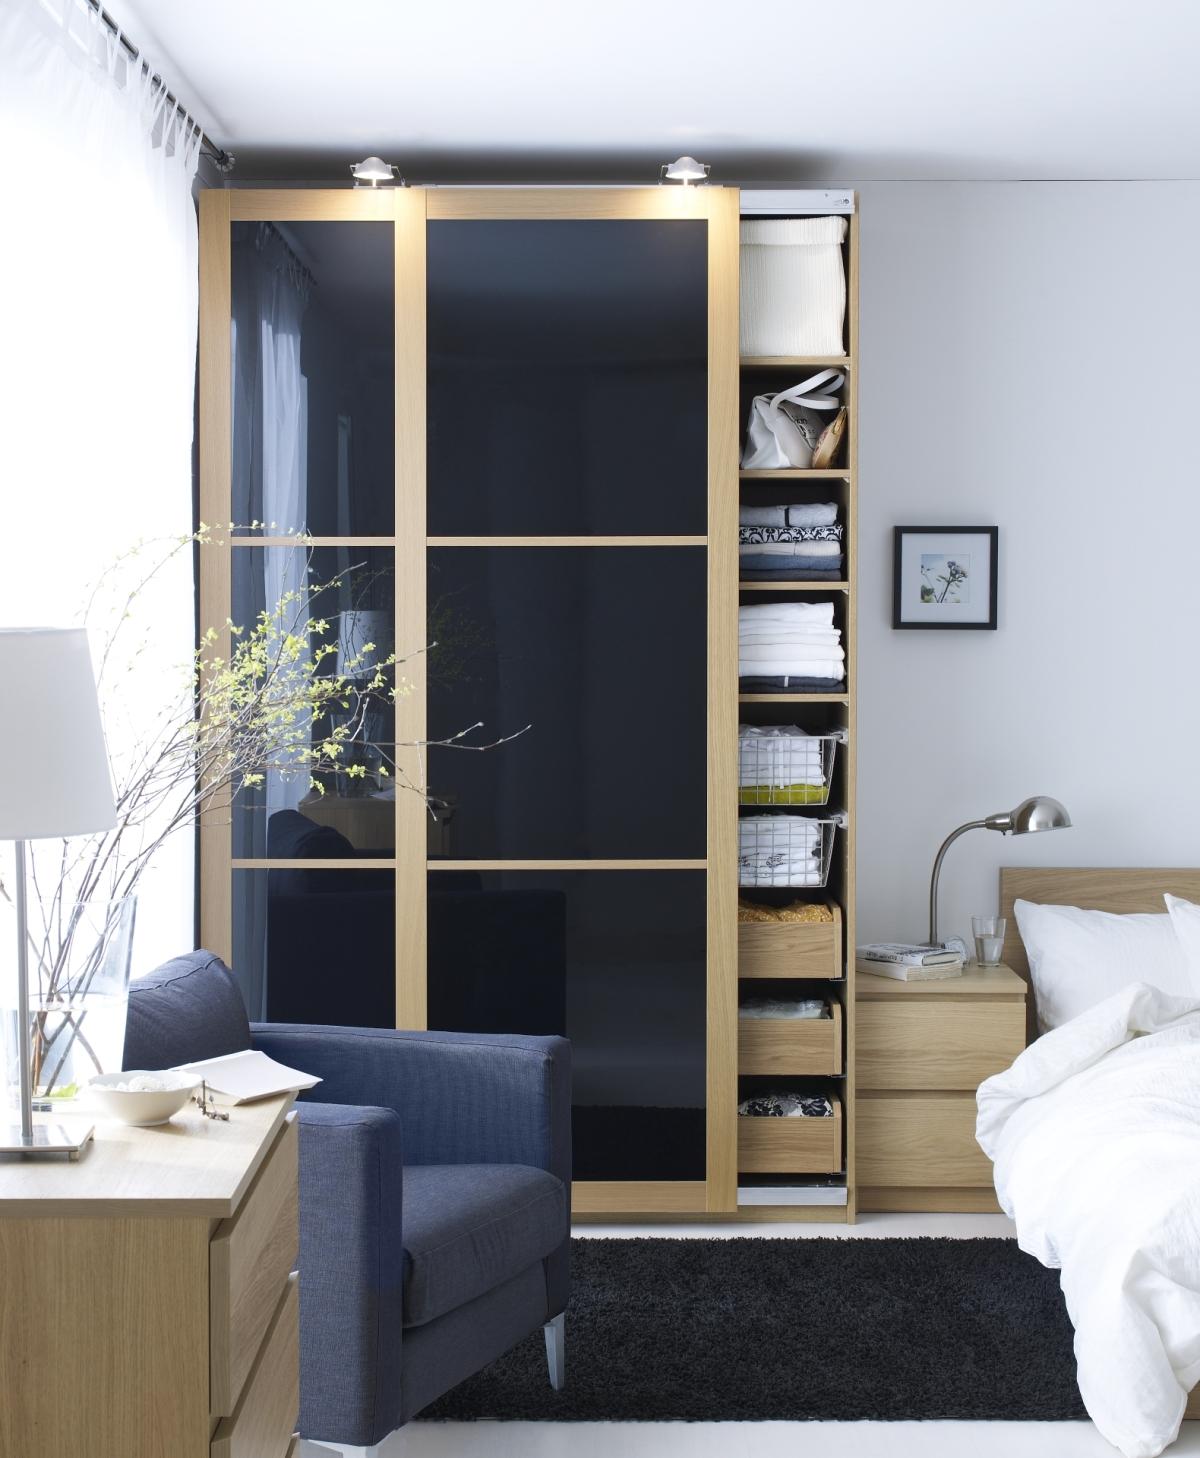 Ikea nos ofrece soluciones para mejorar el orden en nuestros dormitorios